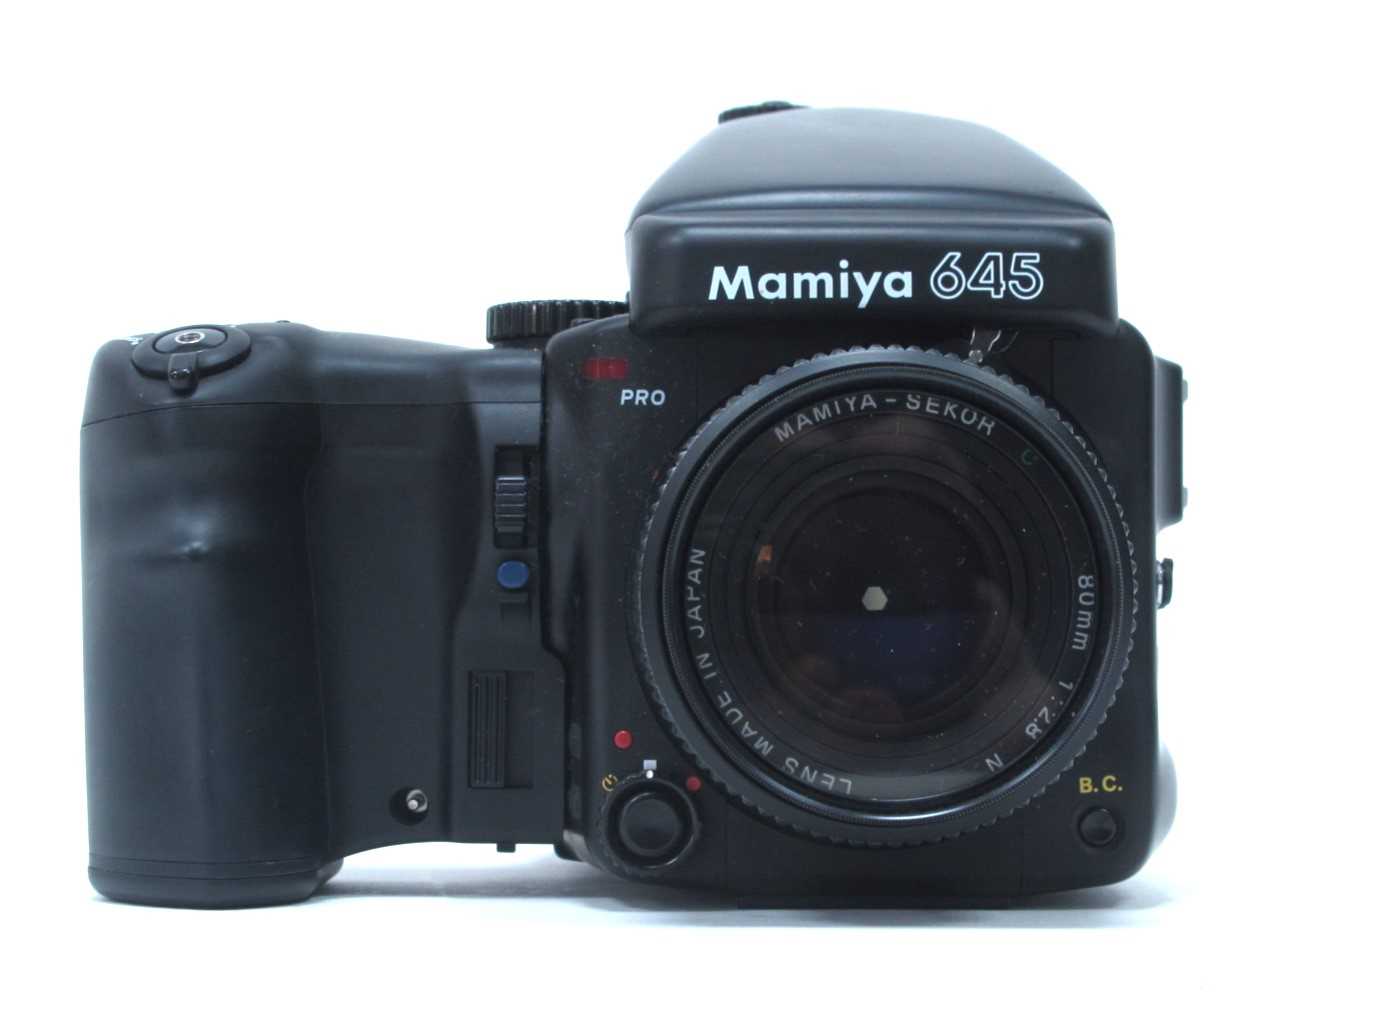 Mamiya 645 Pro Camera, having Mamiya - Sekor 80mm lens 1:2.8, extra 150mm 1:3.5 and 55mm 1:2.8 - Image 3 of 10